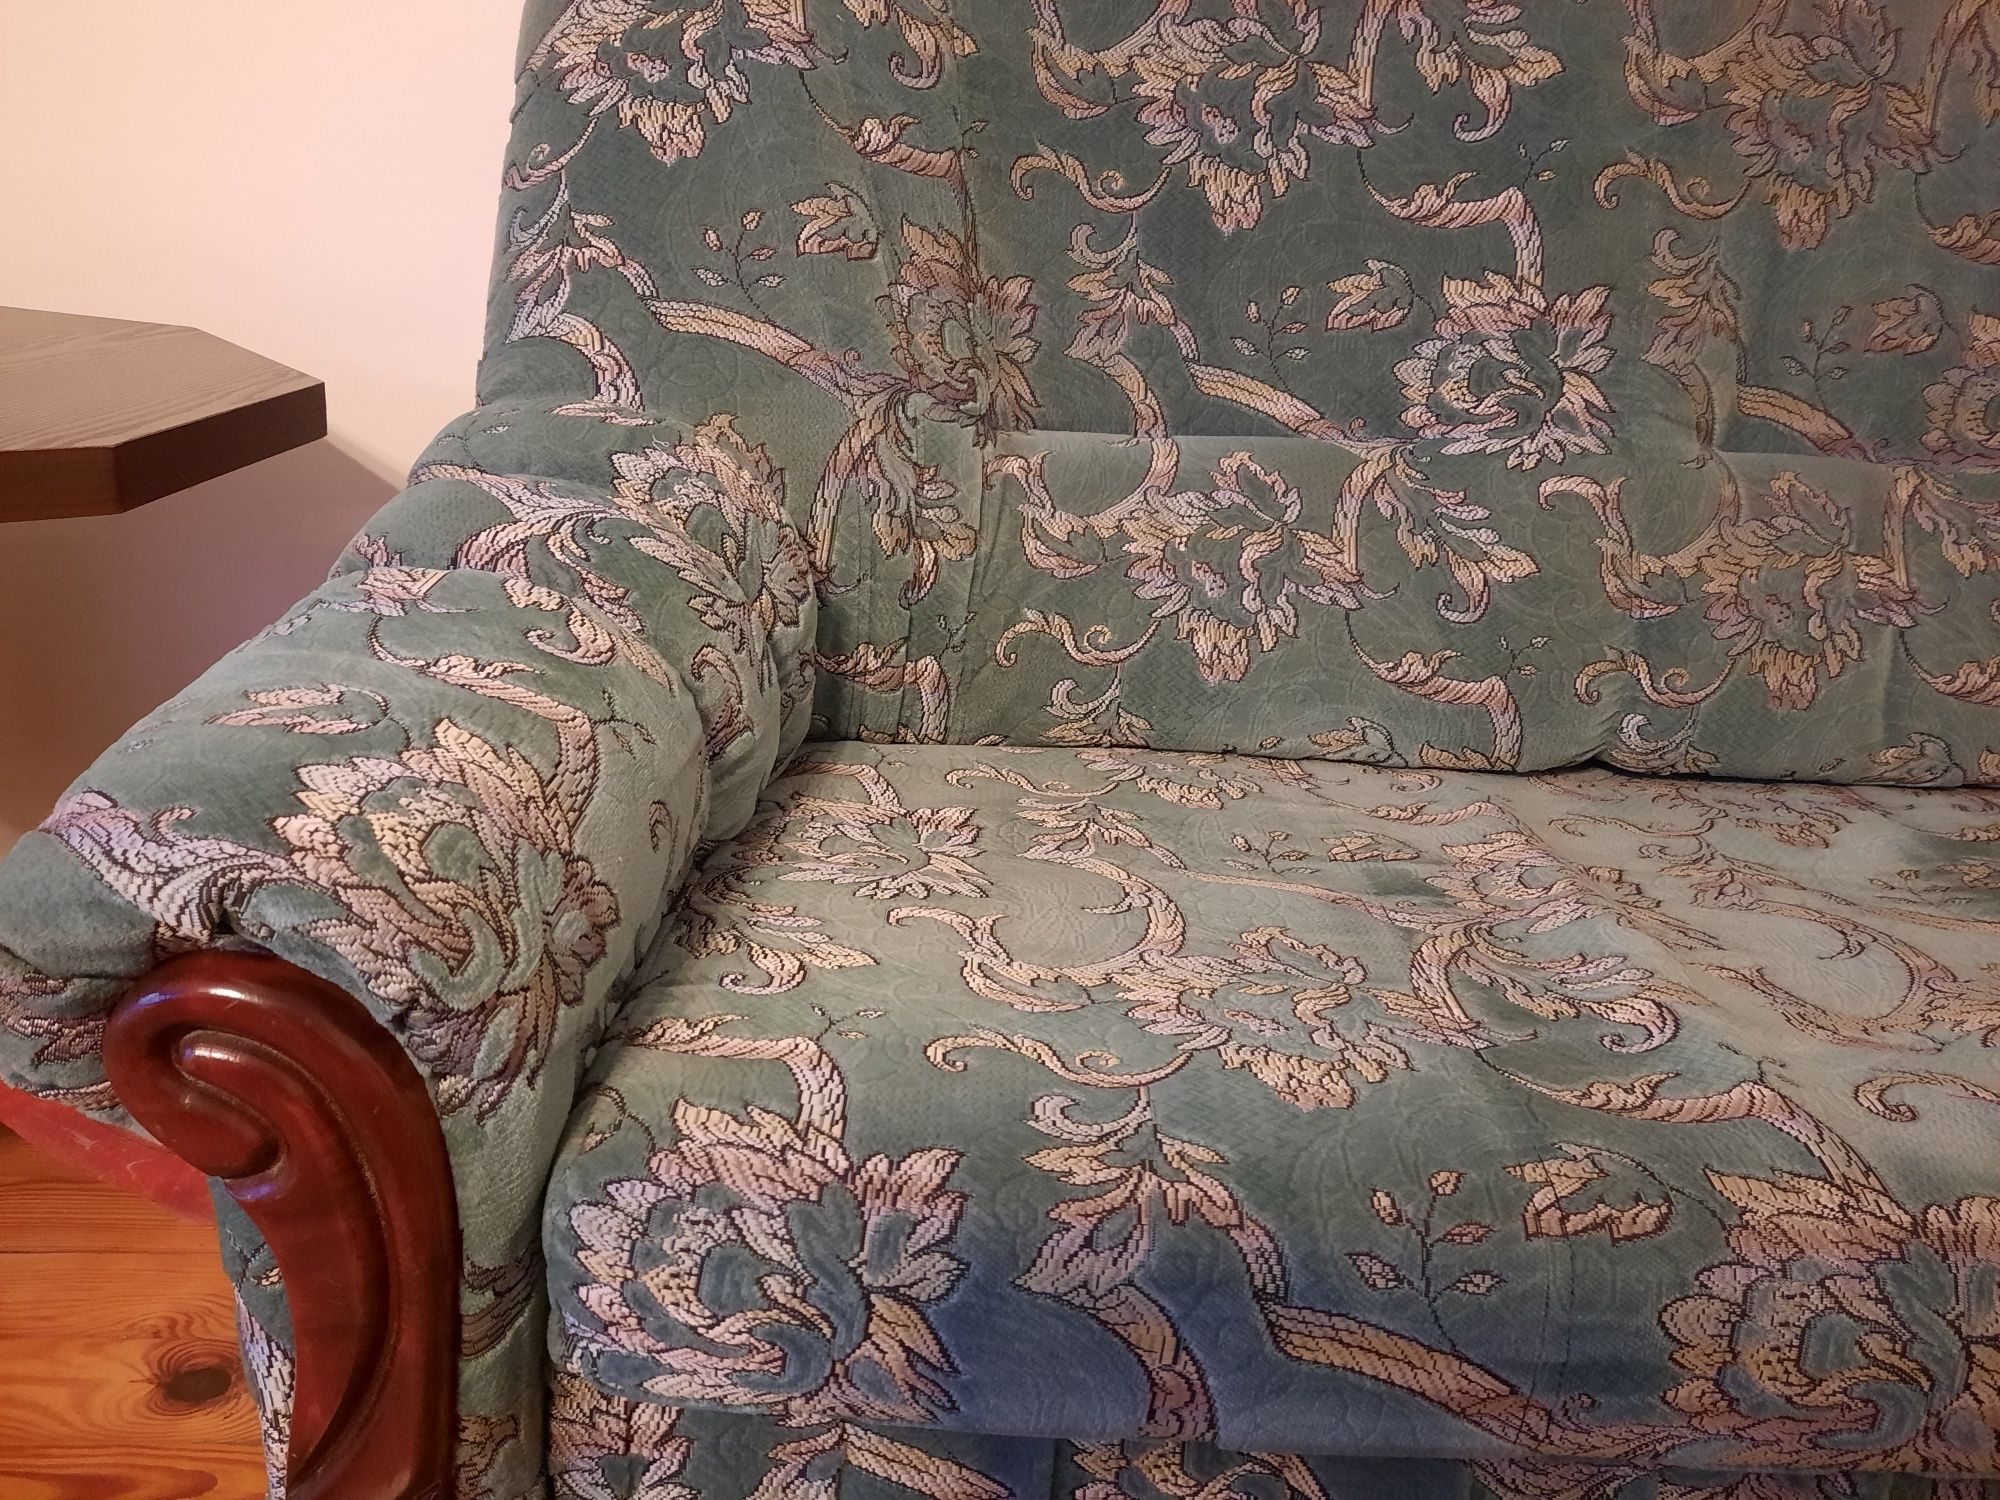 Komplet: sofa/kanapa rozkładana, drewniane krzesła 8 szt., dywan